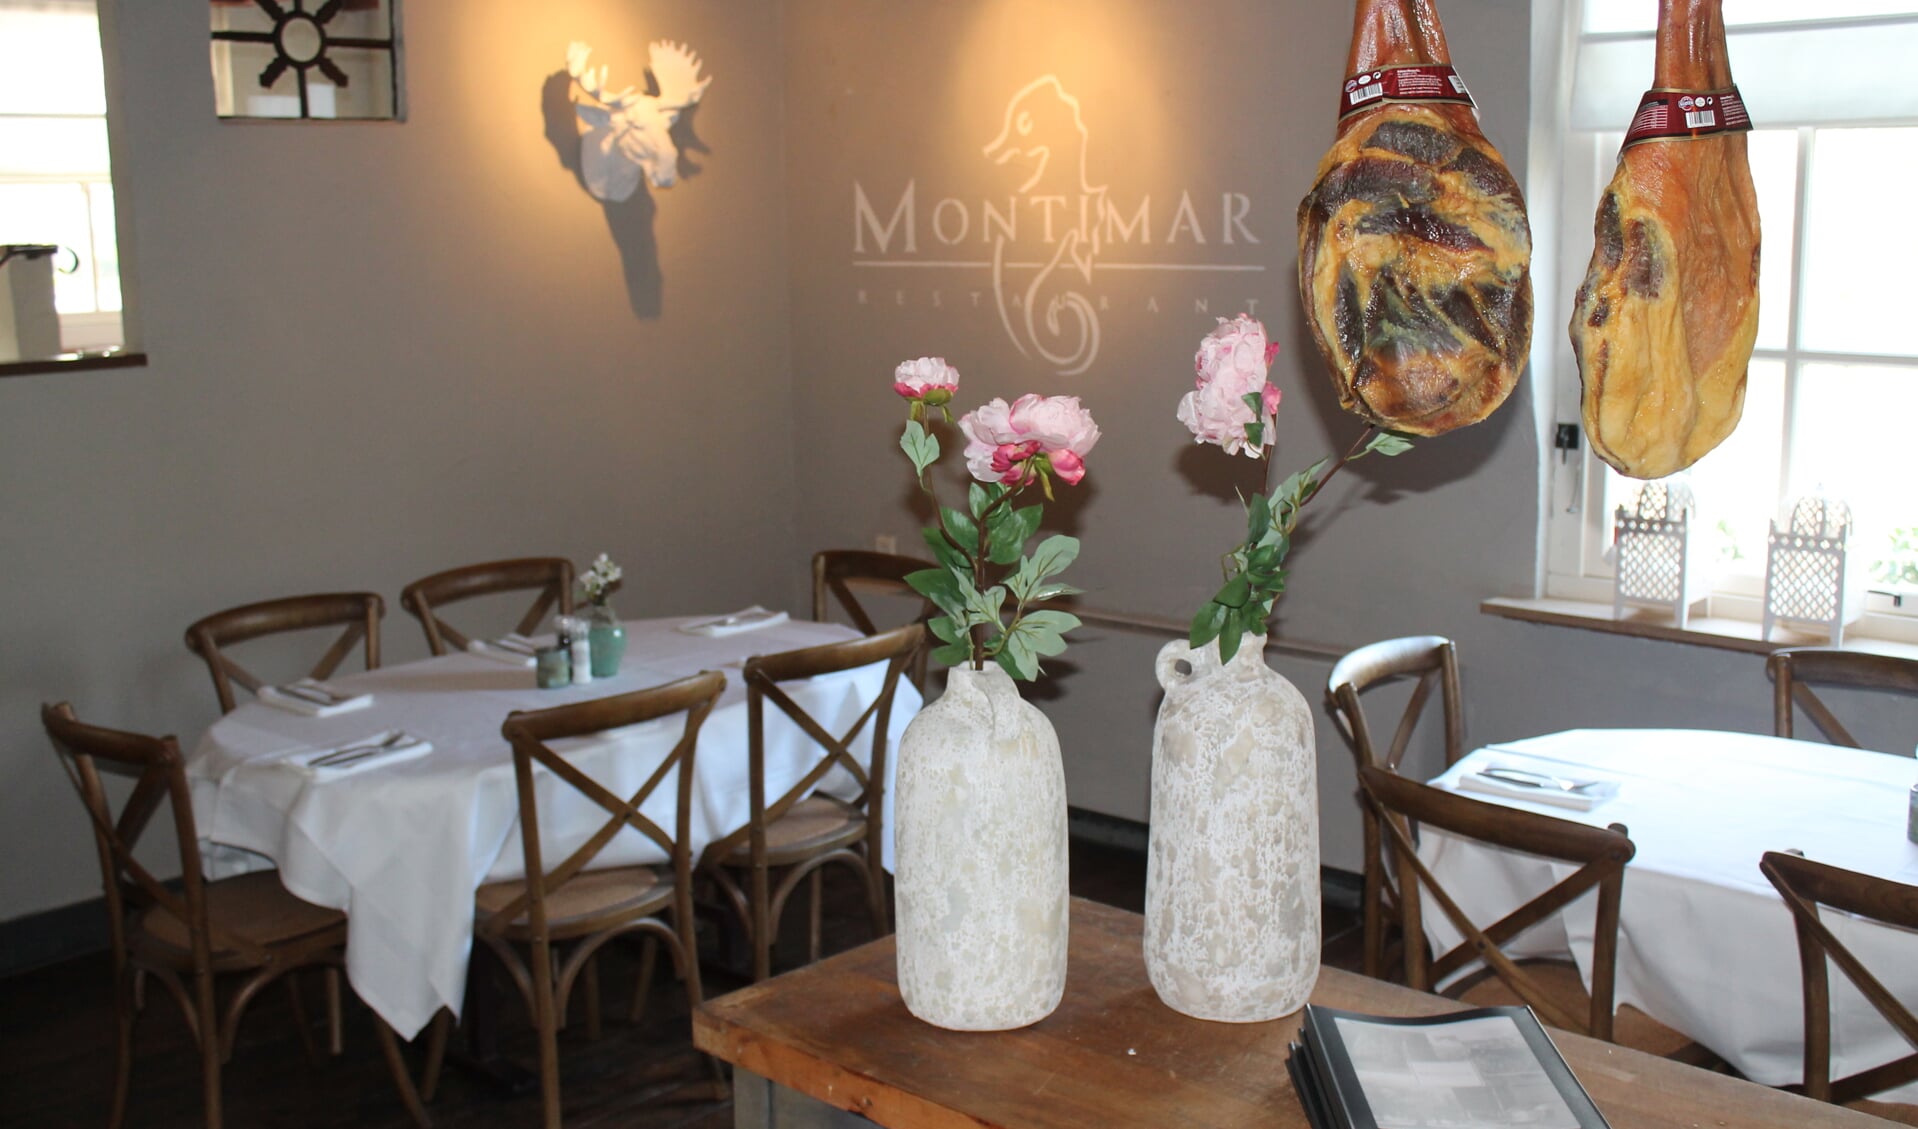 Montimar opent op 10 april de deuren in Oss.